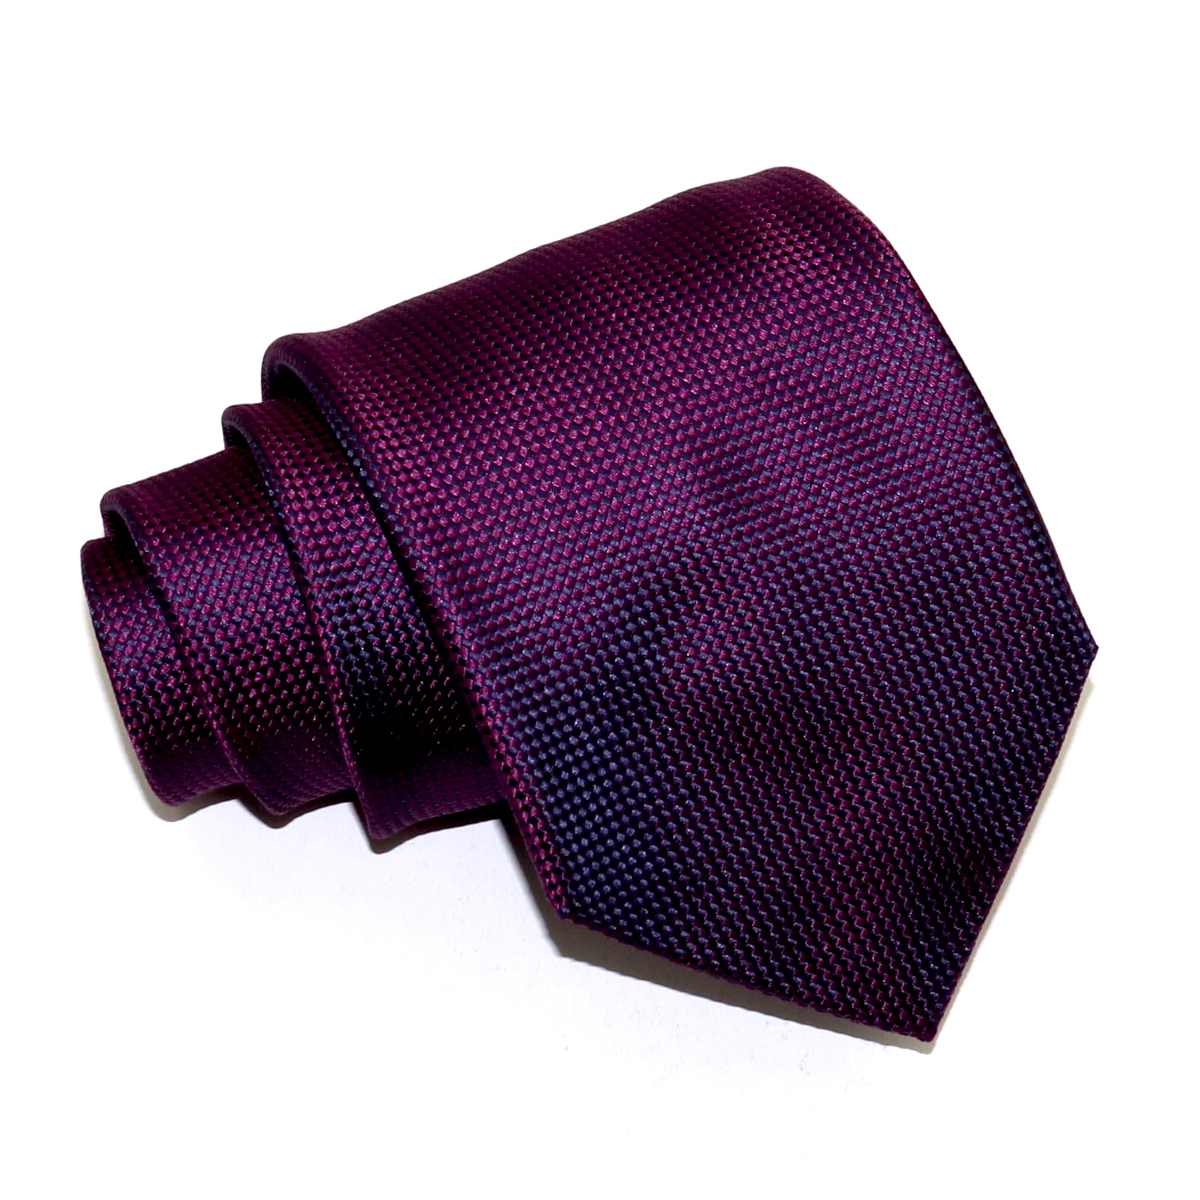 Tailored luxury tie, purple woven iridescent silk, handmade in Italy ...